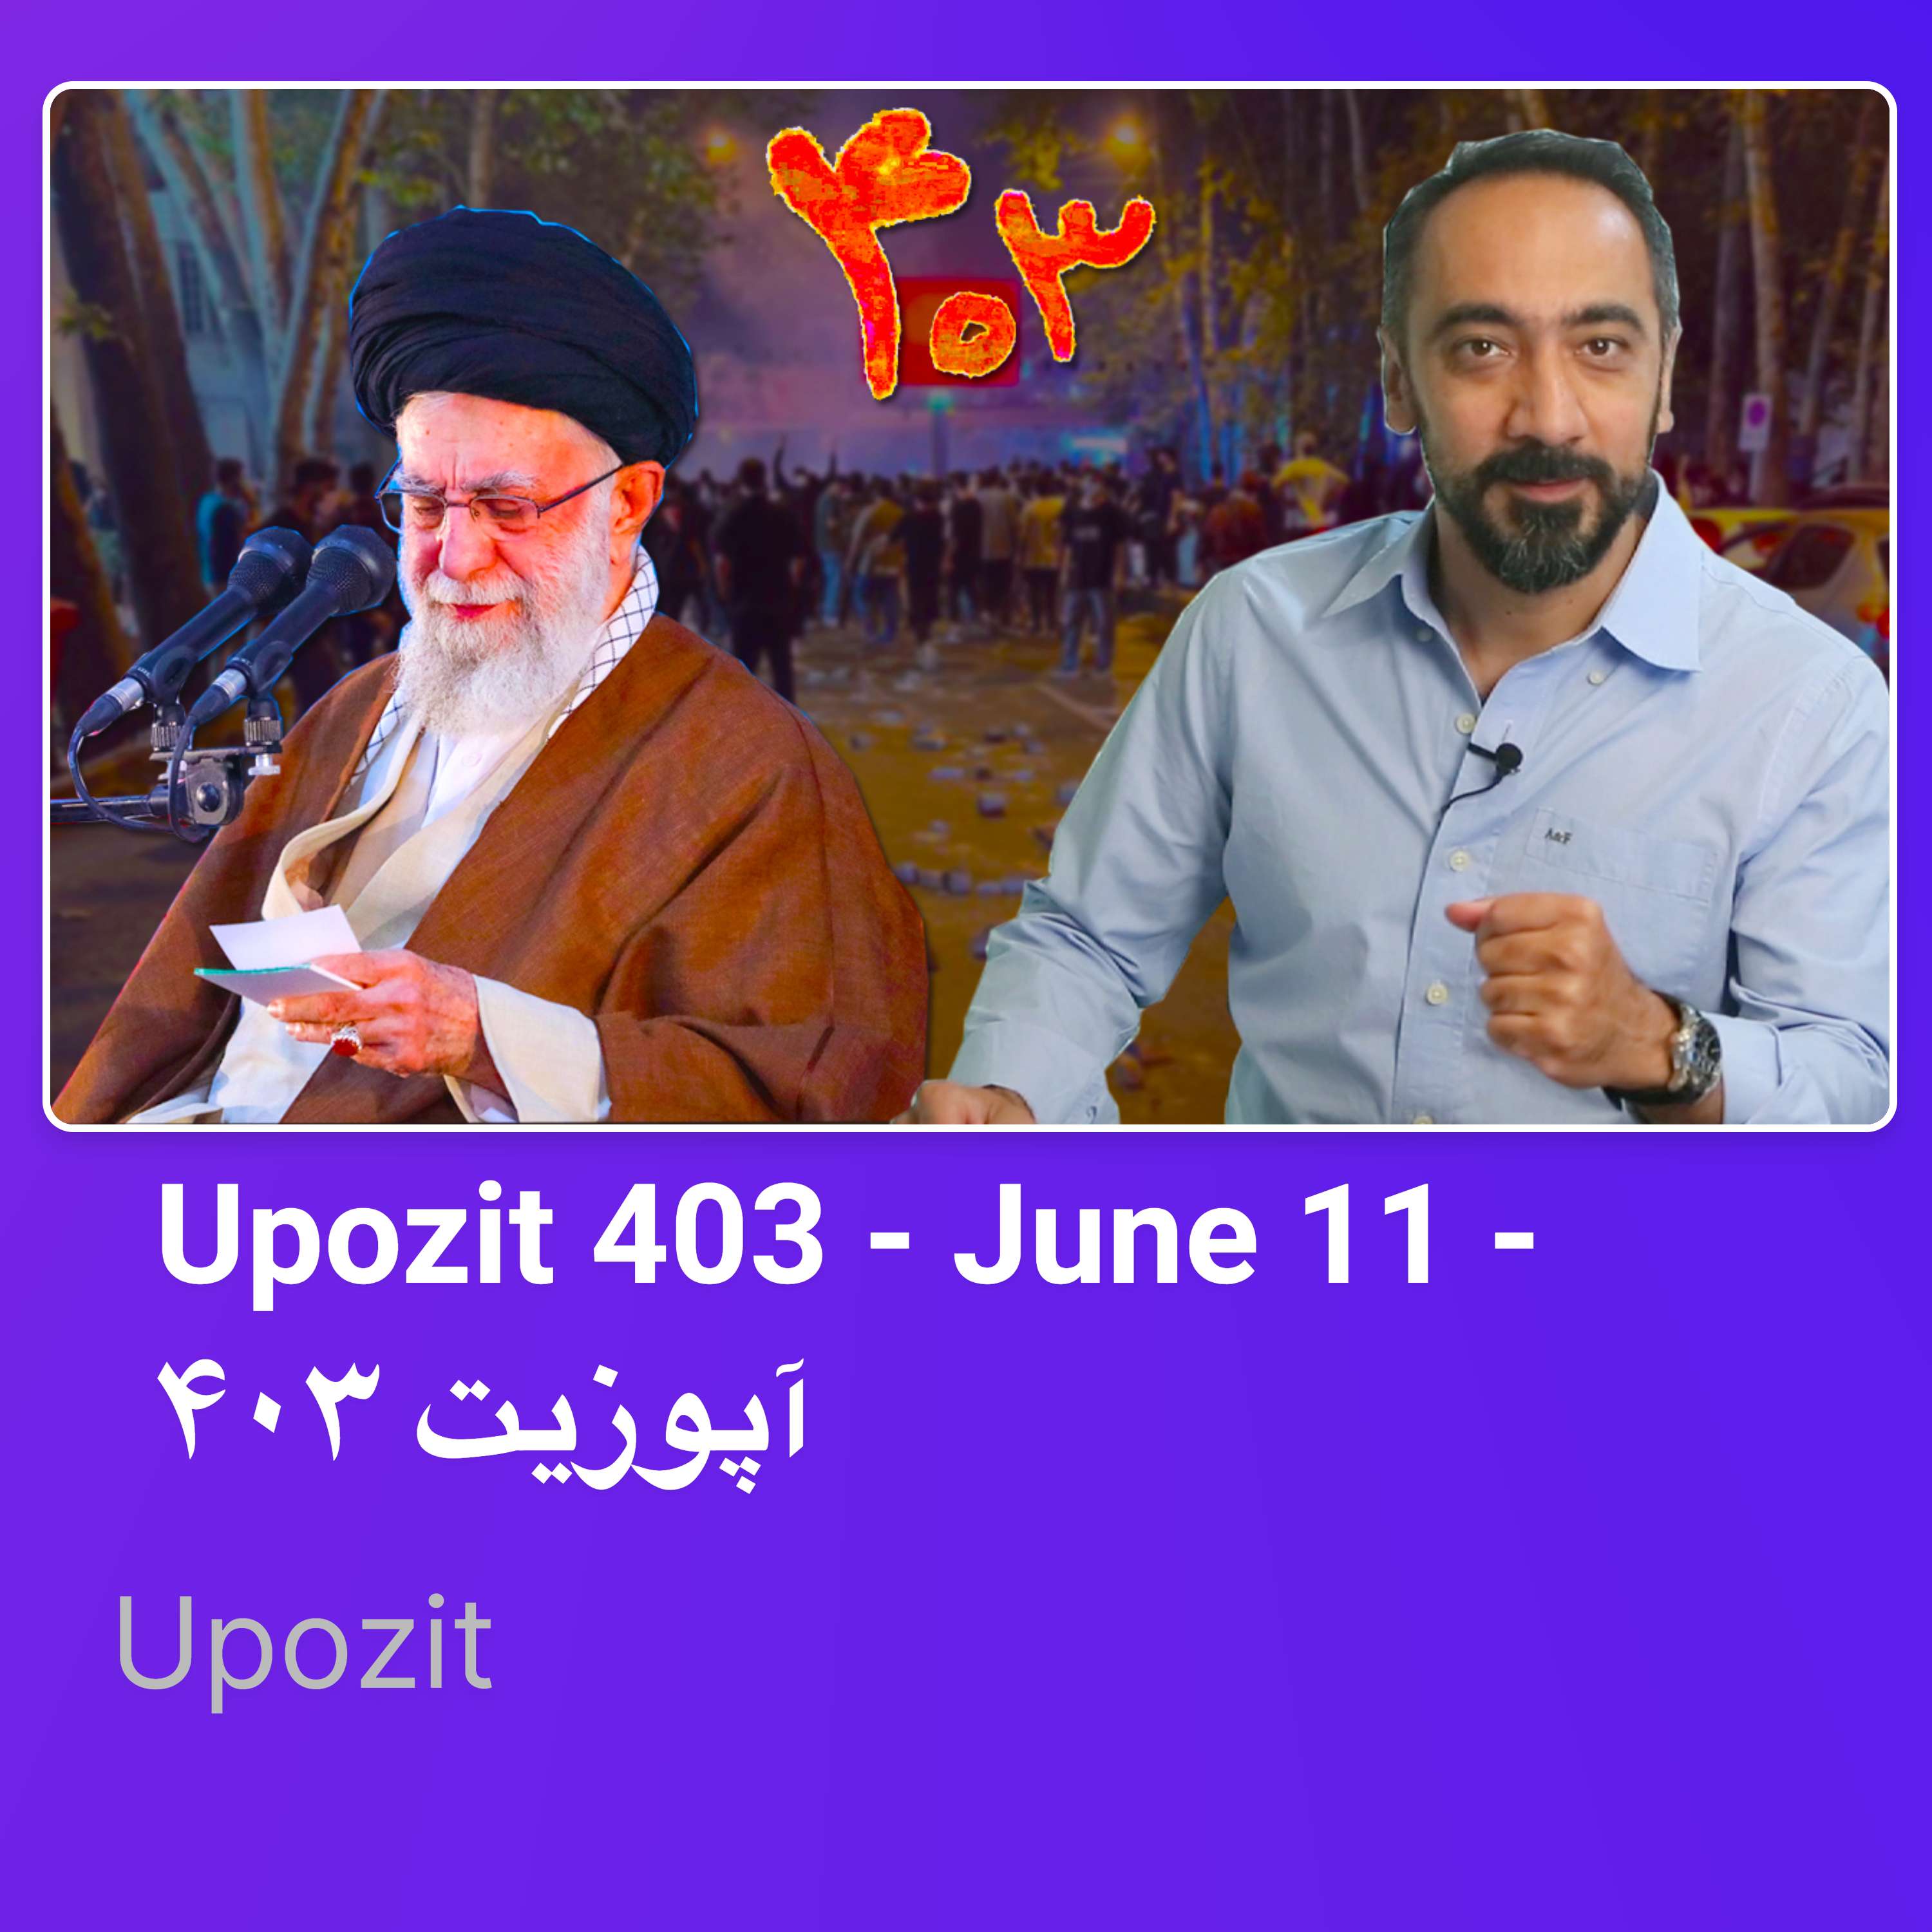 Upozit 403 - June 11 - آپوزیت ۴۰۳